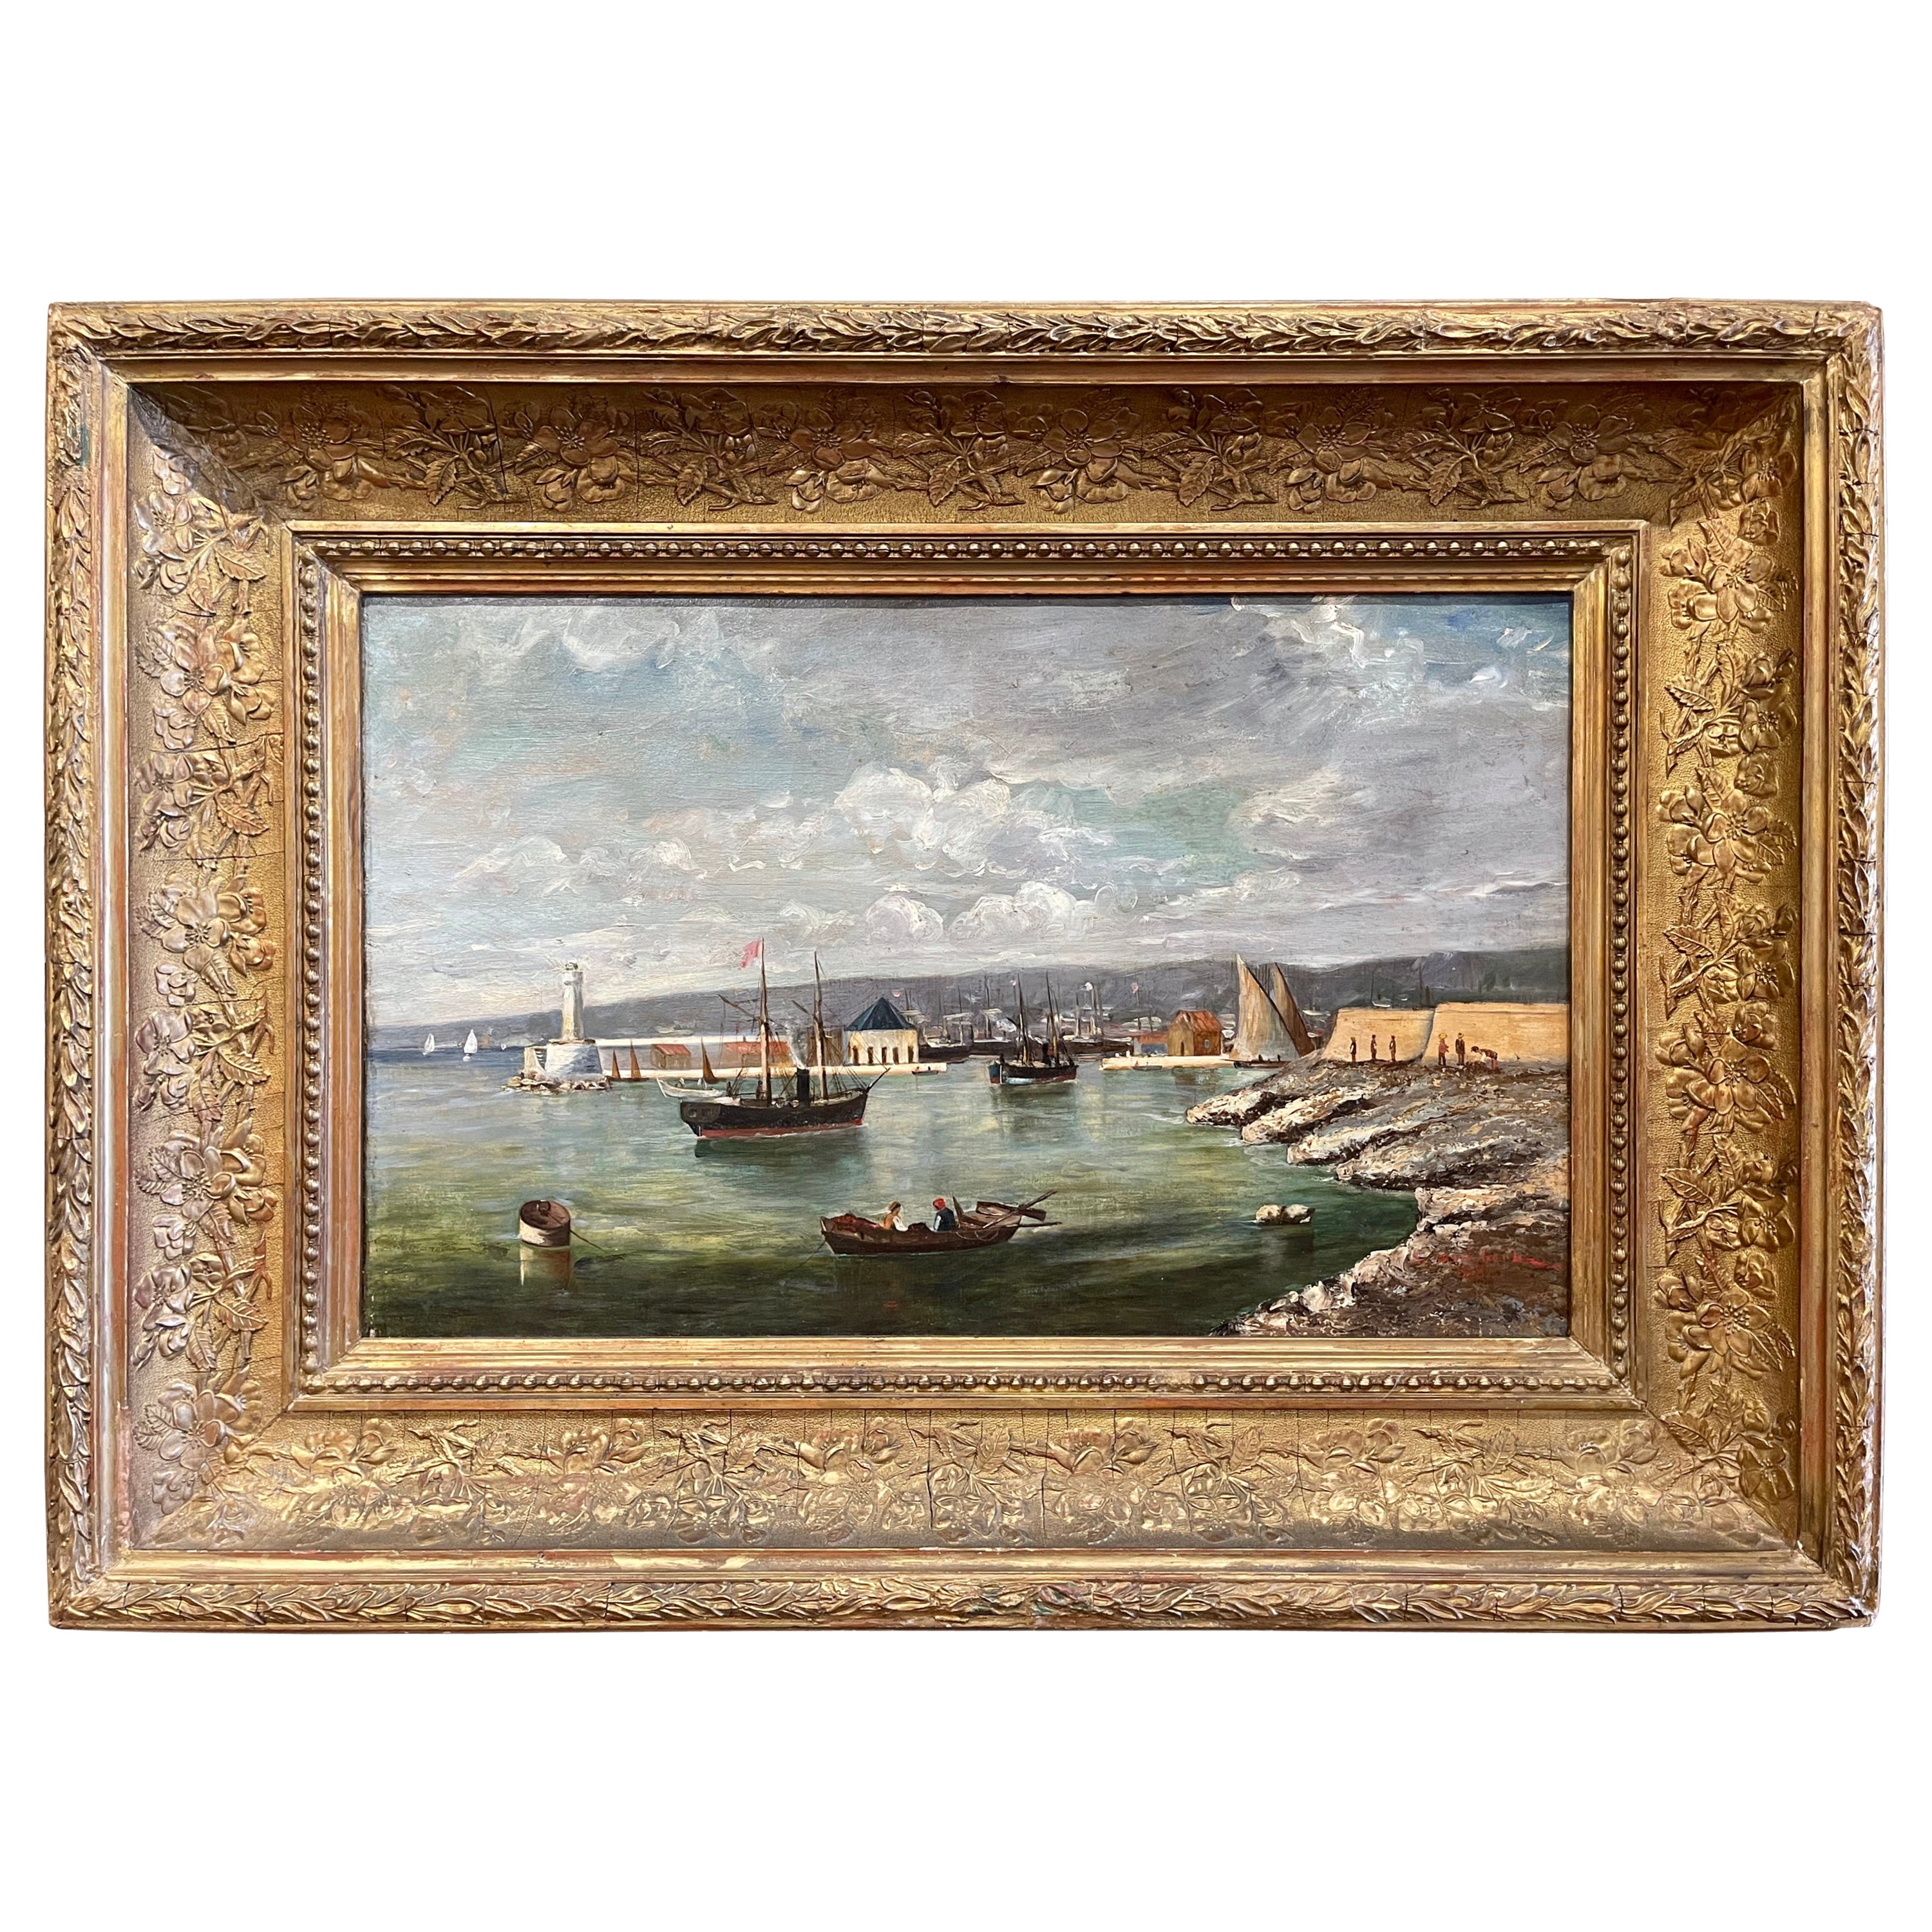  Huile sur toile française du 19ème siècle représentant une marine, signée S. Audibert et datée de 1885